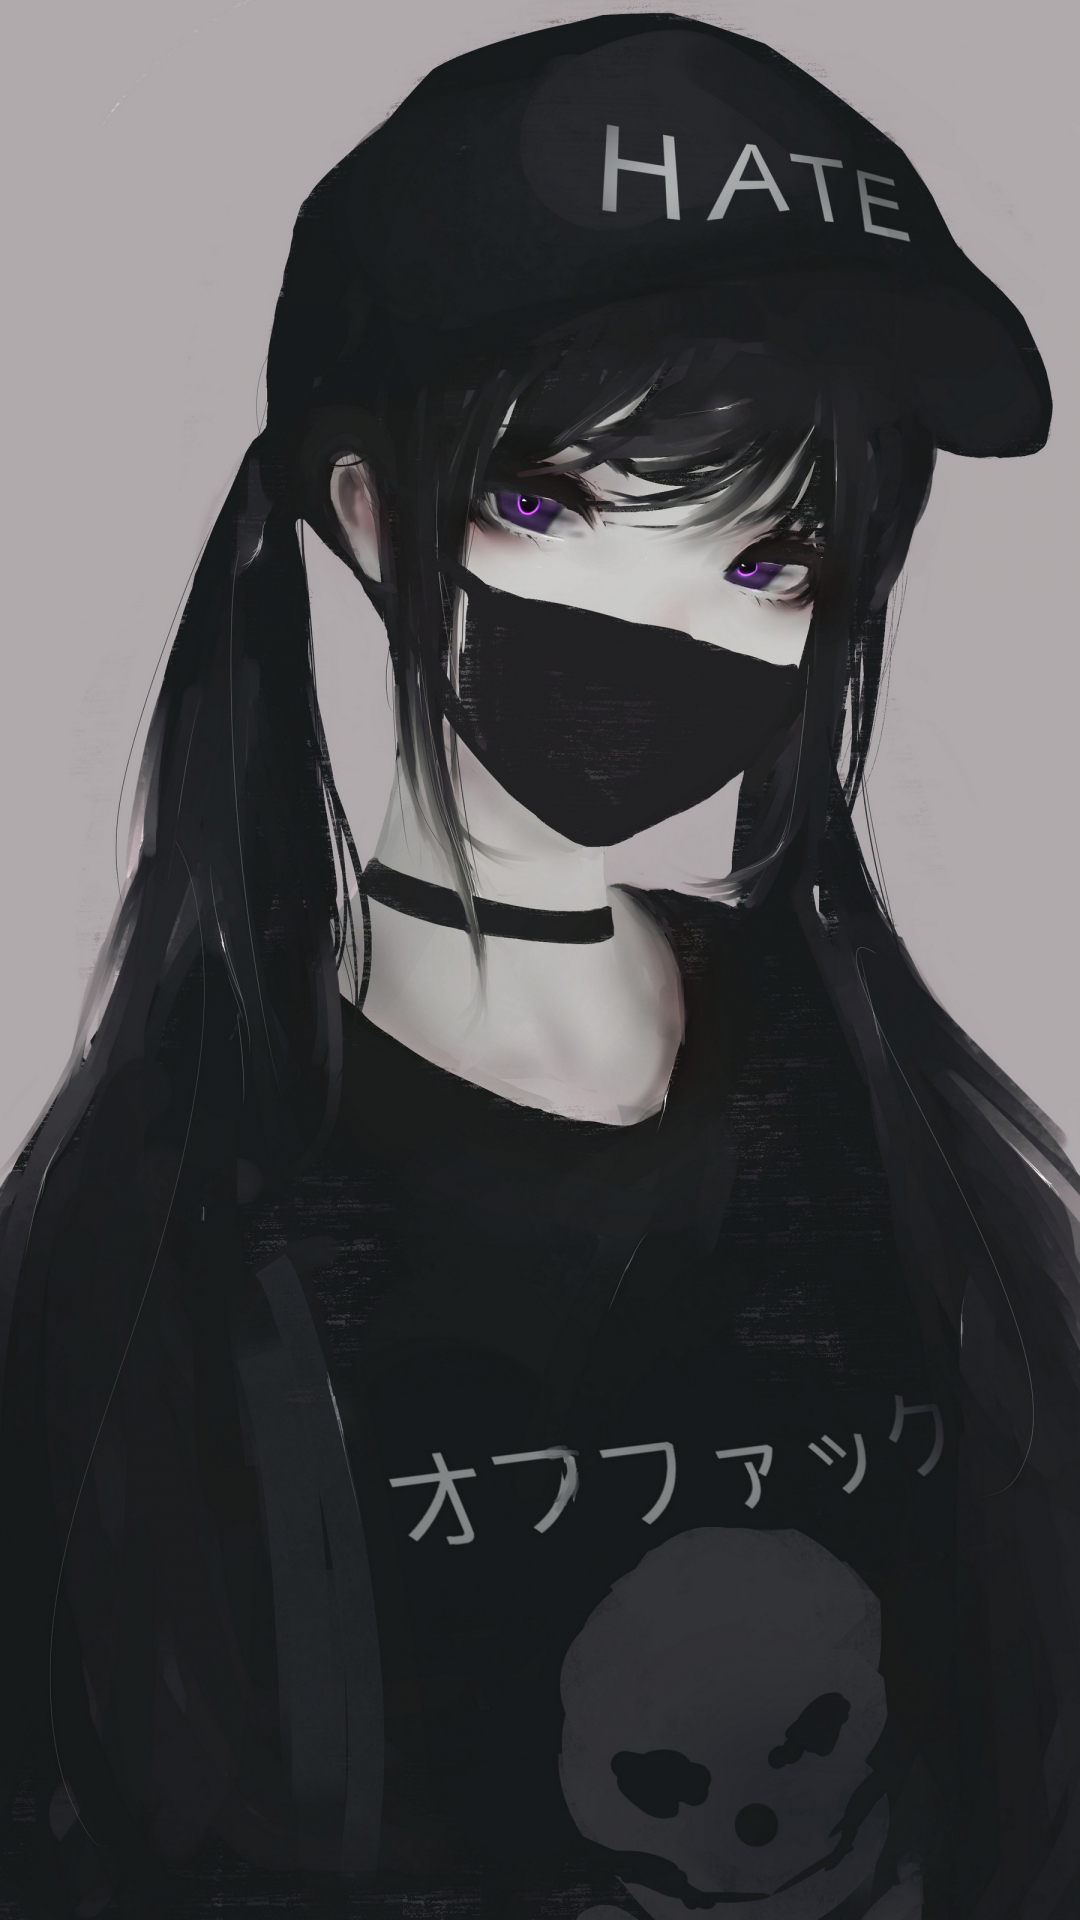 Anime girl with dark hair